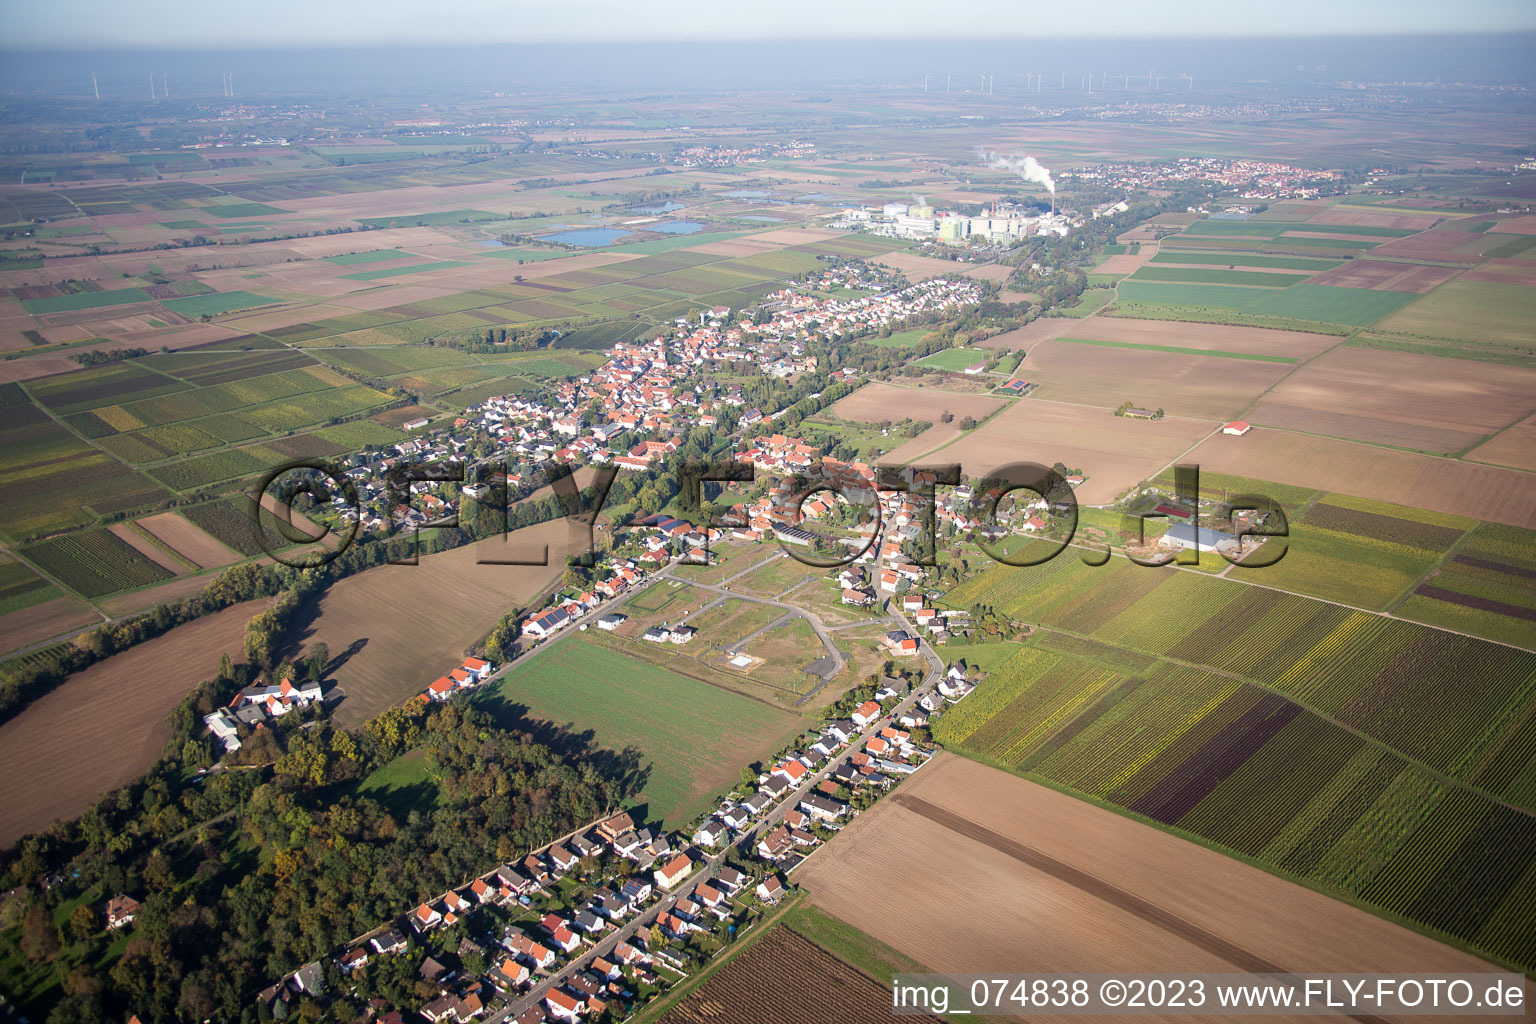 Heidesheim in the state Rhineland-Palatinate, Germany